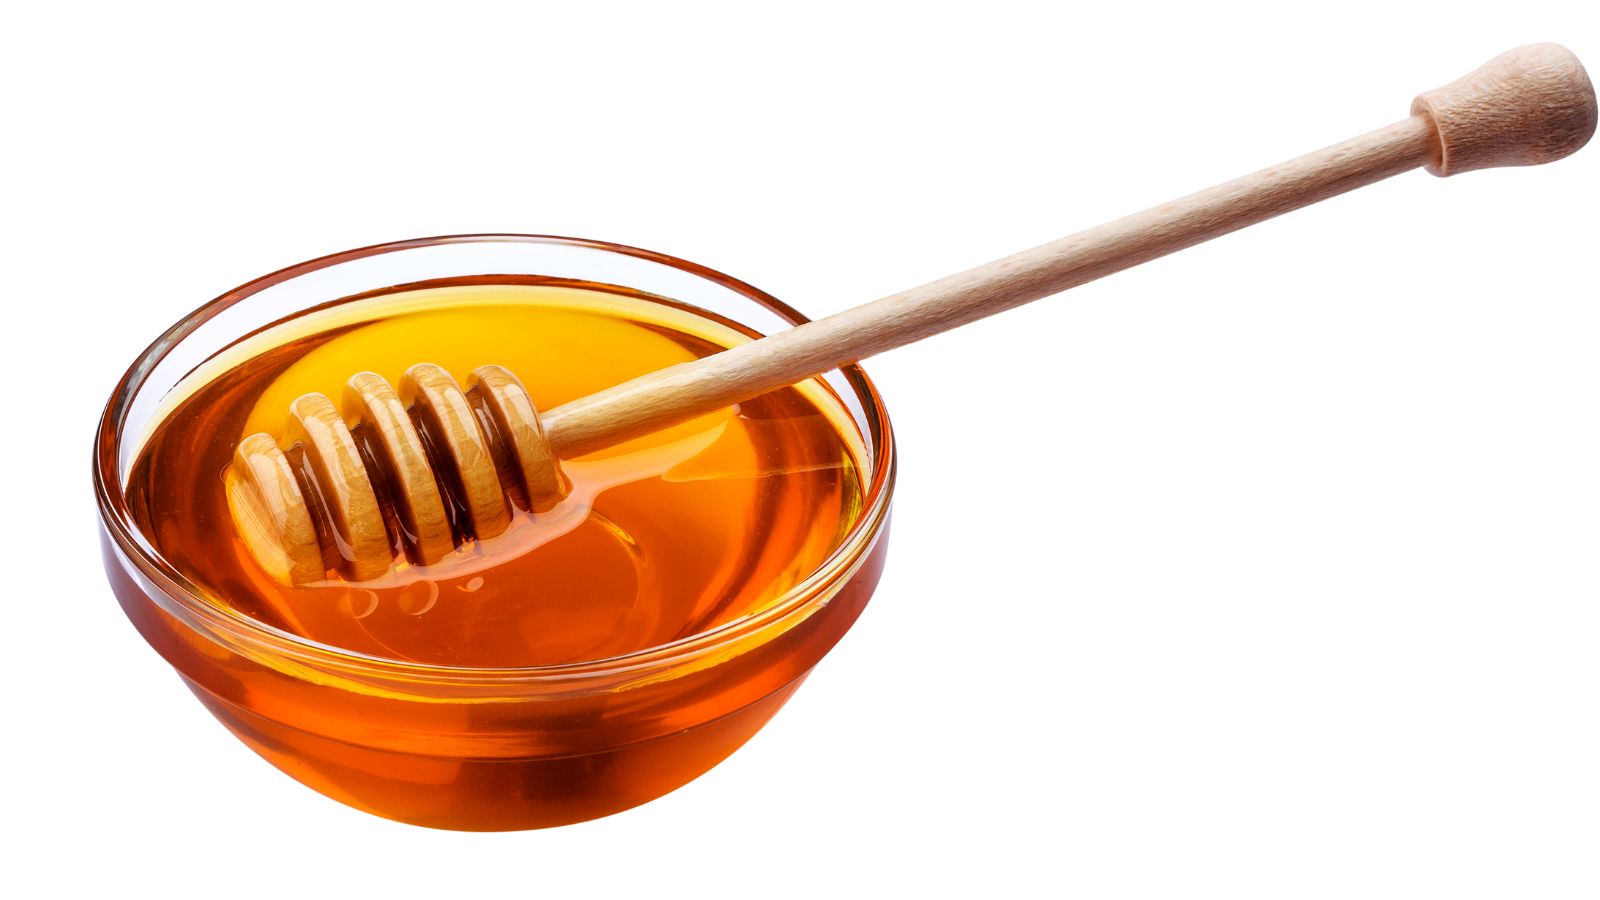 Mật ong và đường phèn cung cấp không chỉ vị ngọt mà còn mang lại mùi thơm tự nhiên cho granola.